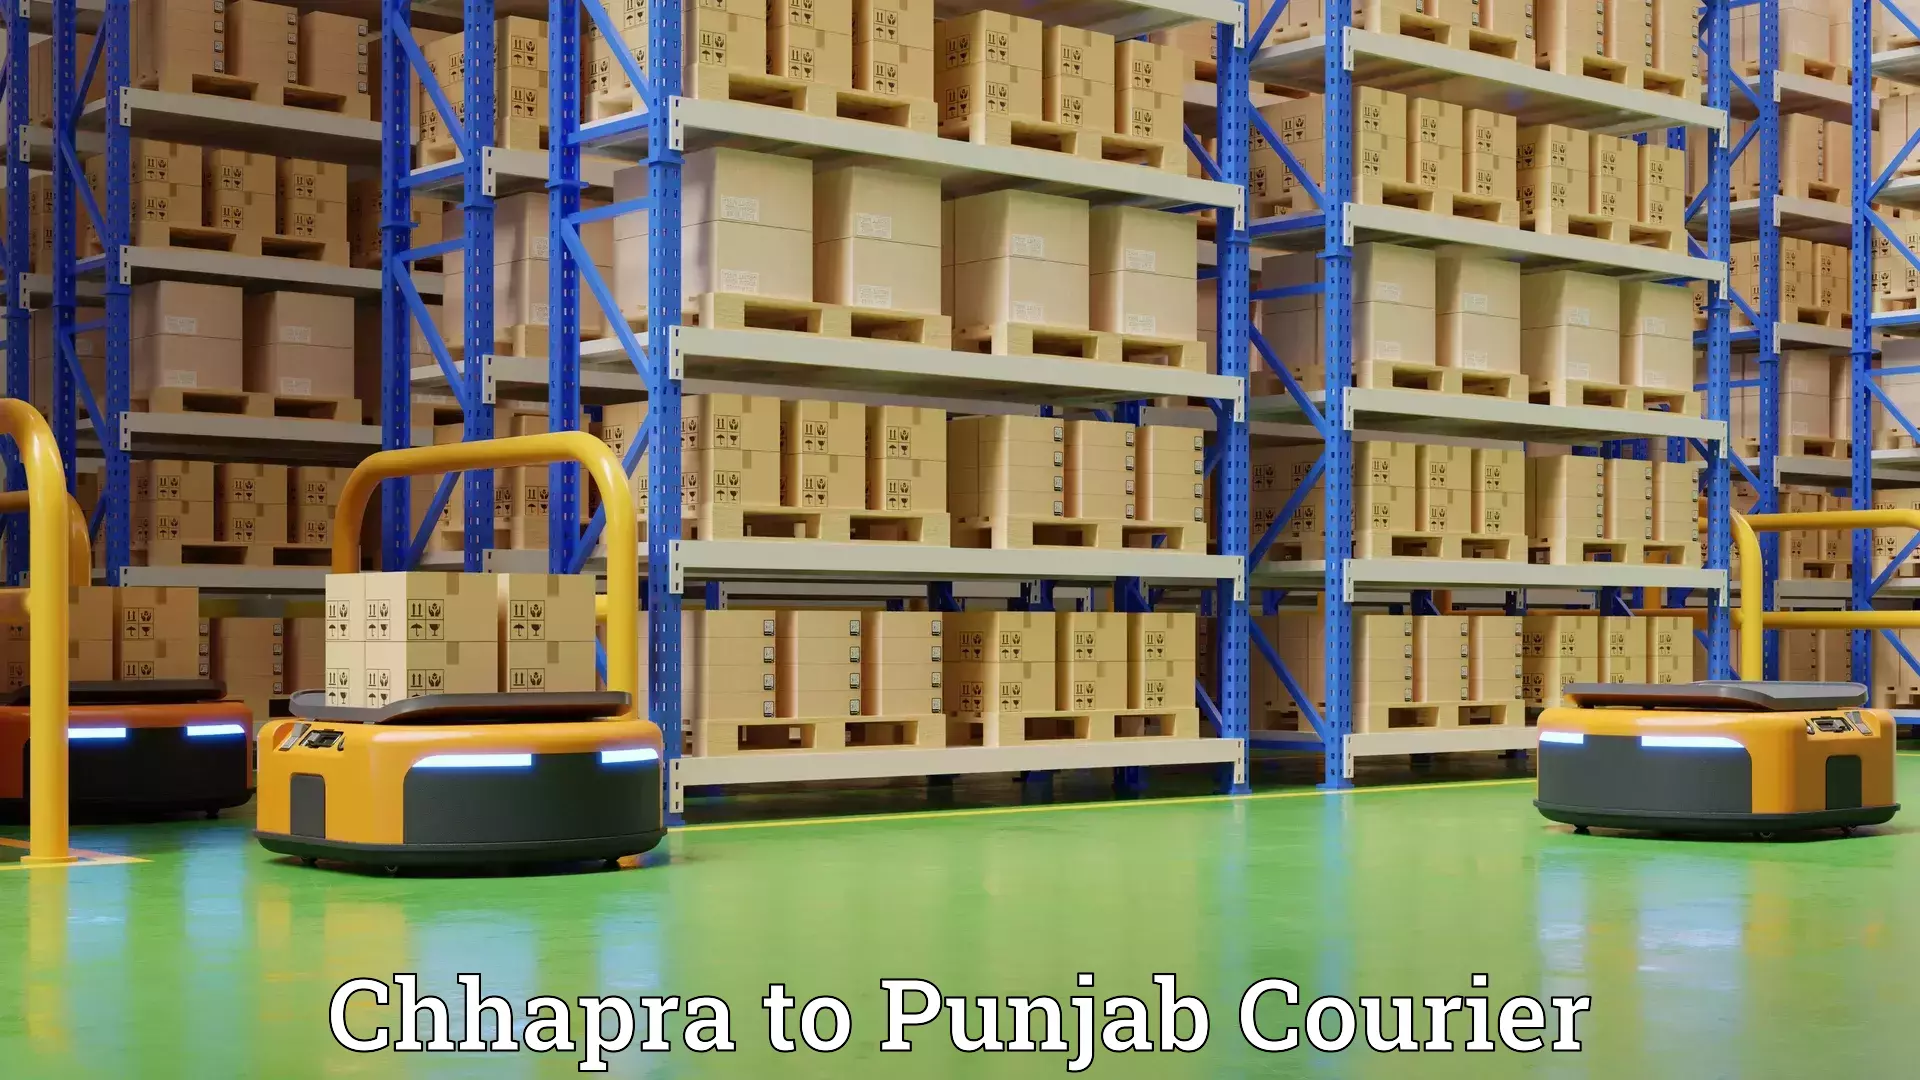 Furniture moving experts Chhapra to Punjab